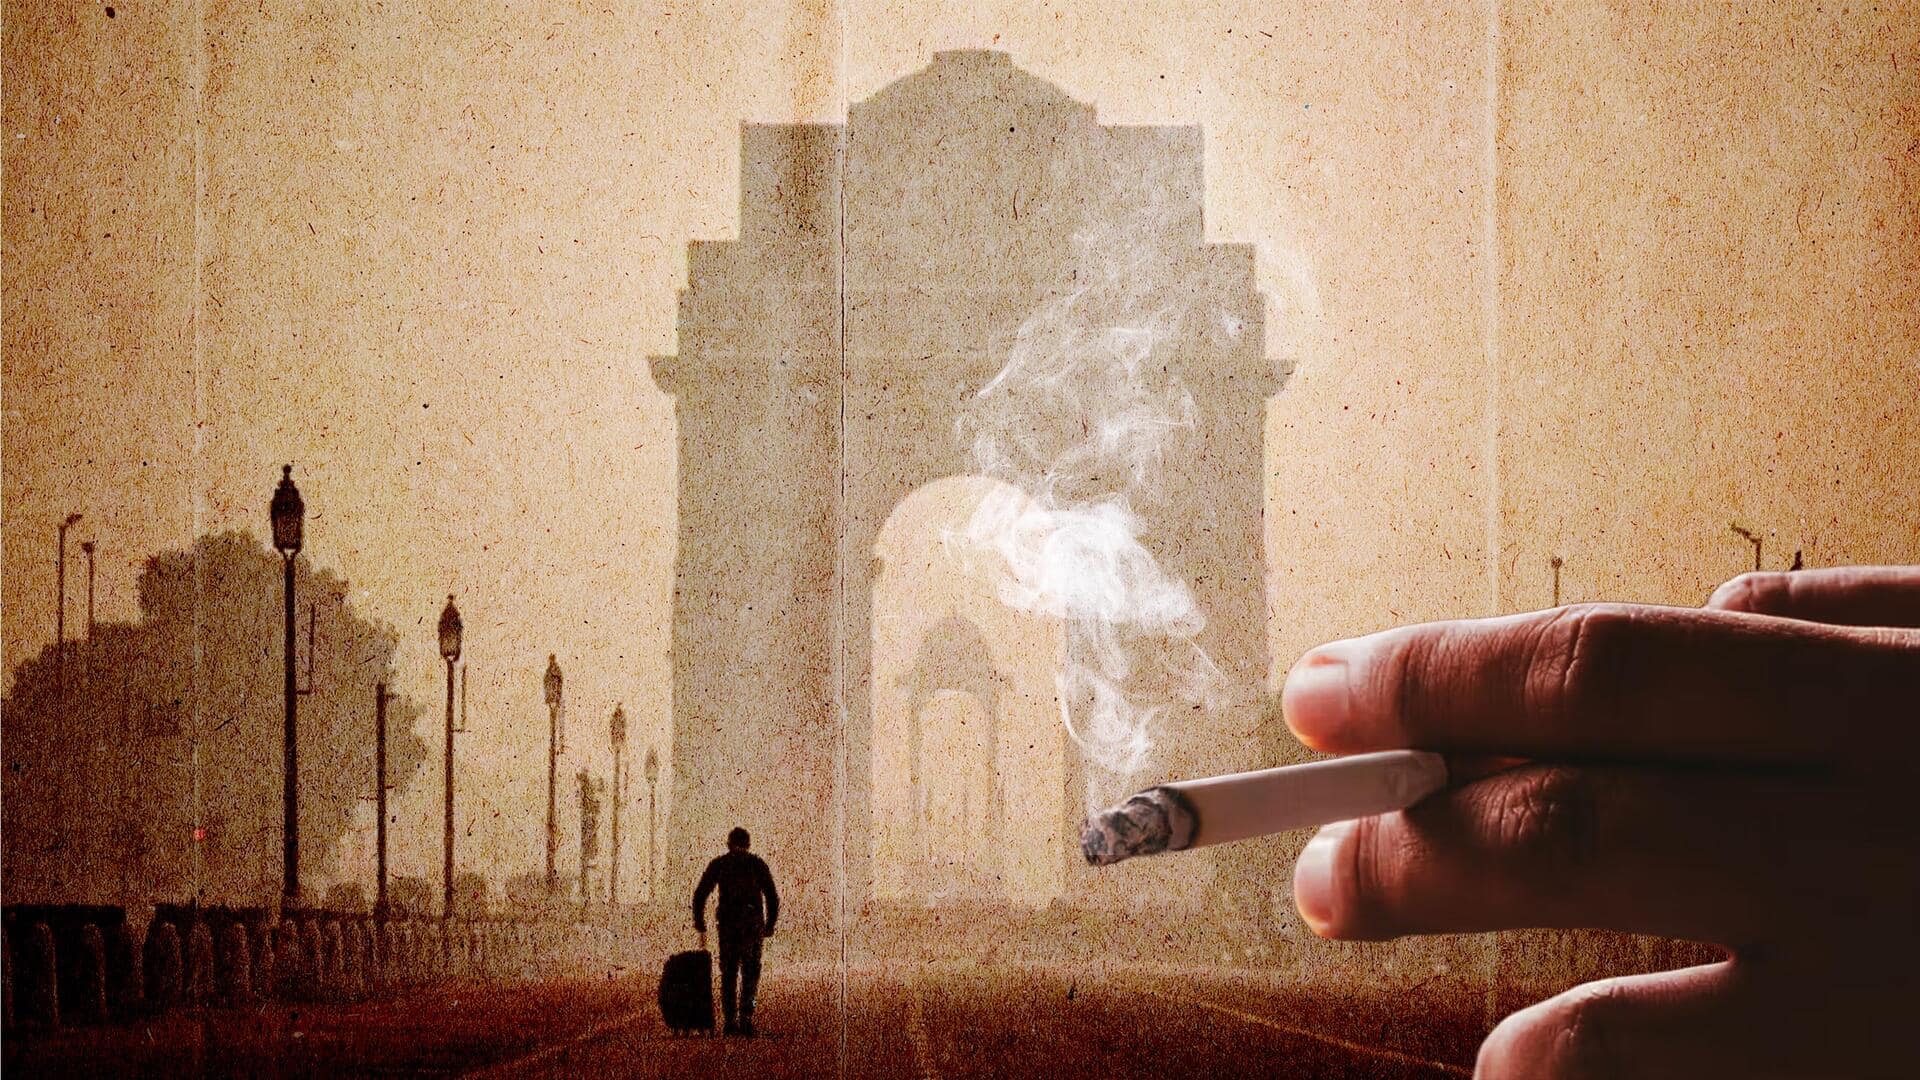 दिल्ली की हवा में सांस लेना रोजाना 15 सिगरेट पीने जितना खतरनाक, जानें क्या-क्या खतरा